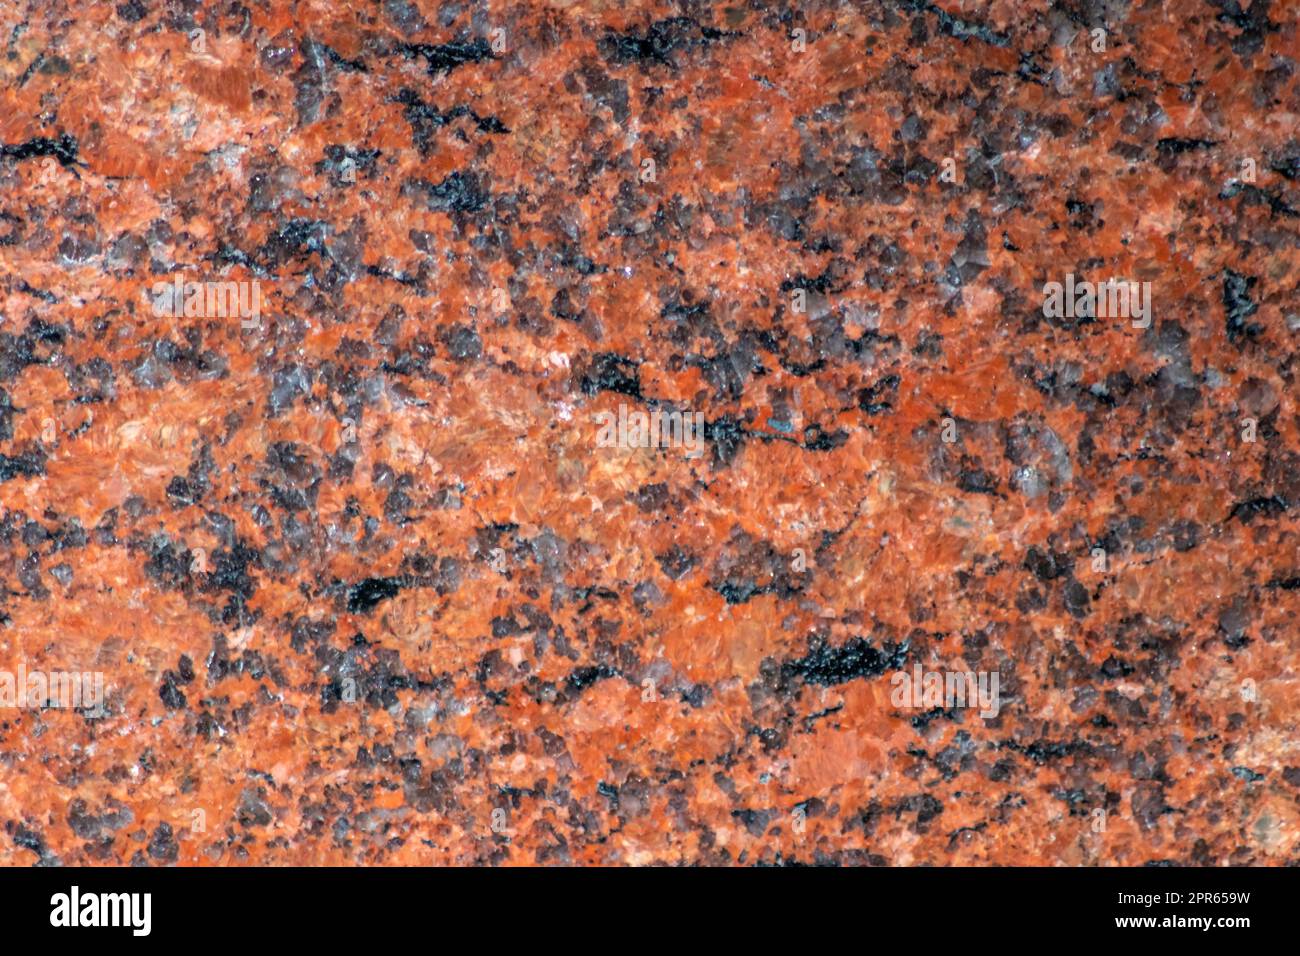 Eleganter roter Marmor und schwarze Marmorstruktur mit elegantem Fußboden mit Marmorfliesen und solidem Gesteinsmaterial als wunderschönes Innenarchitektur- und Fassadendesign-Element mit natürlichen mineralischen Texturen Stockfoto